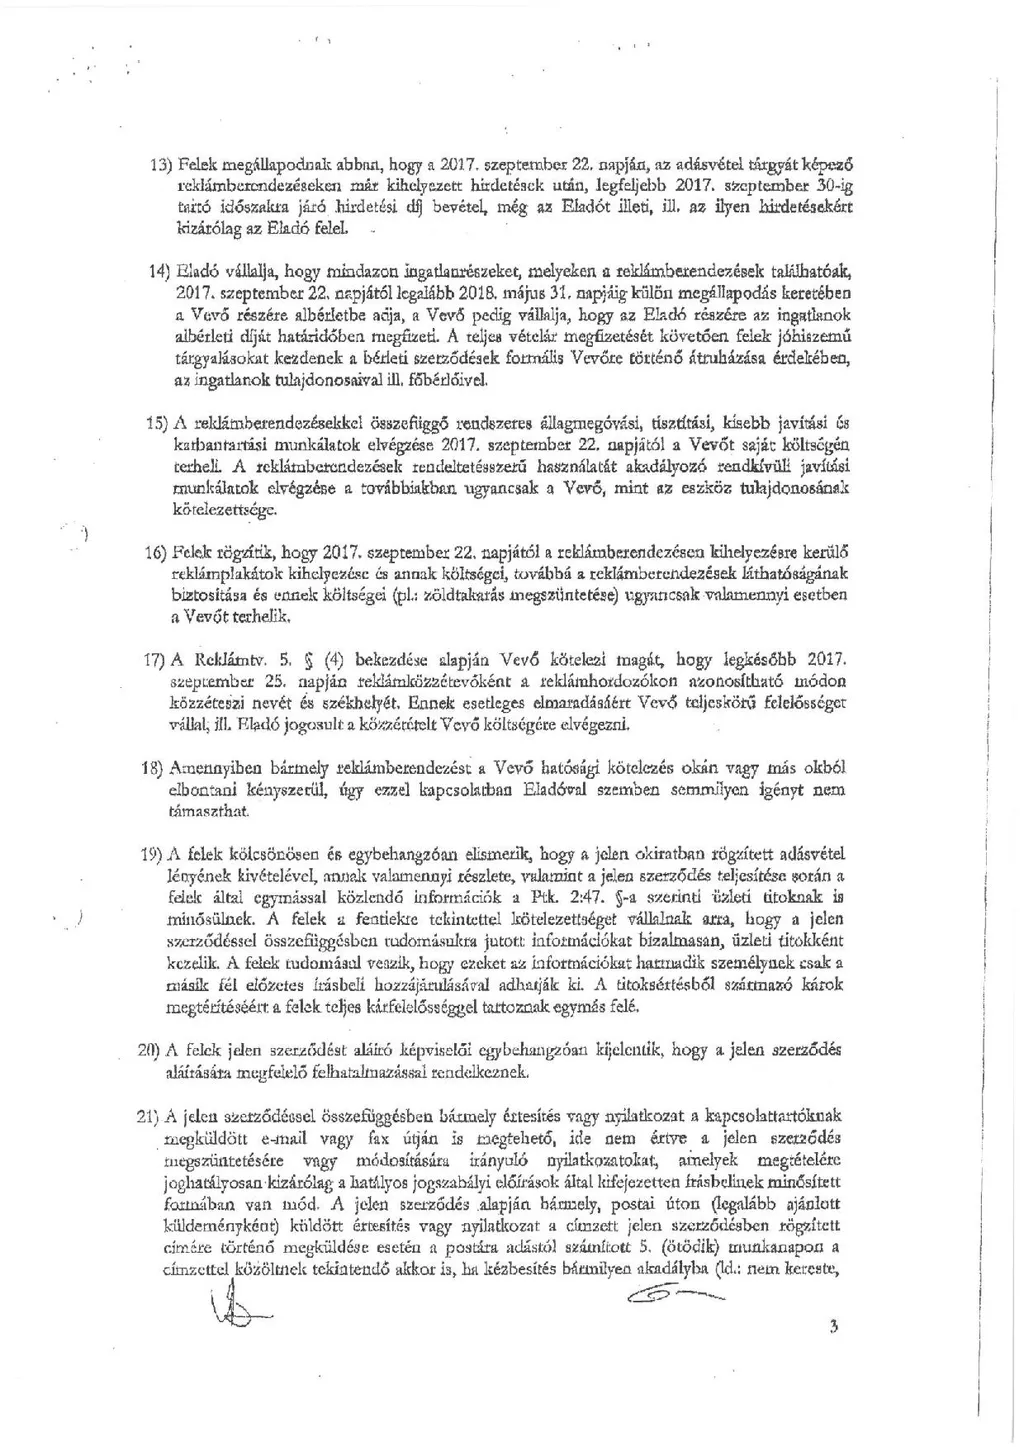 Simicska-Jobbik szerződés, Euro-Publicity–Jobbik szerződés 